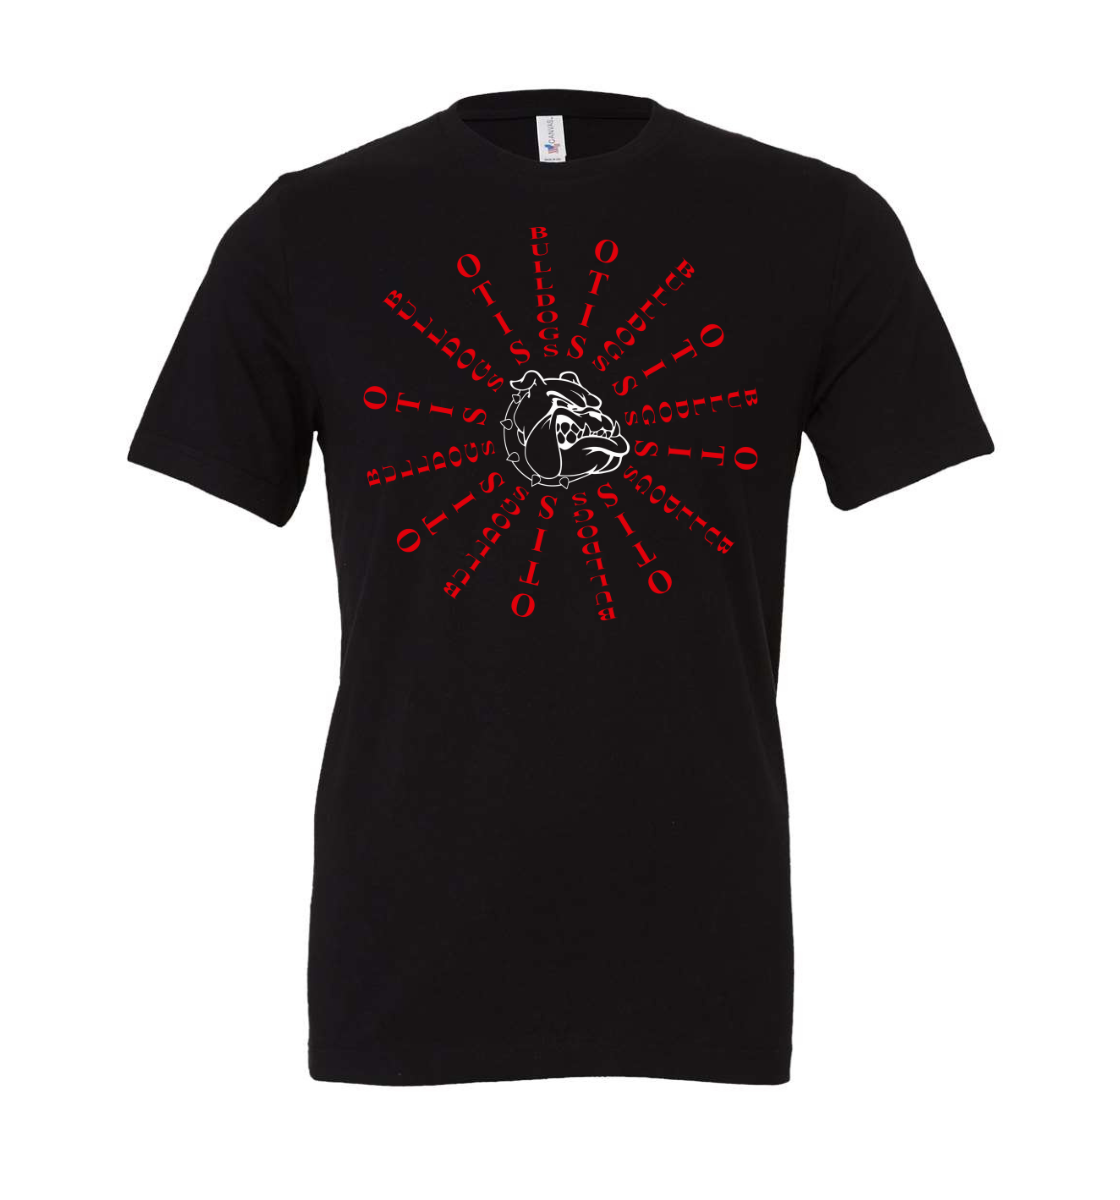 otis bulldogs t-shirt: for otis bulldogs fans only!